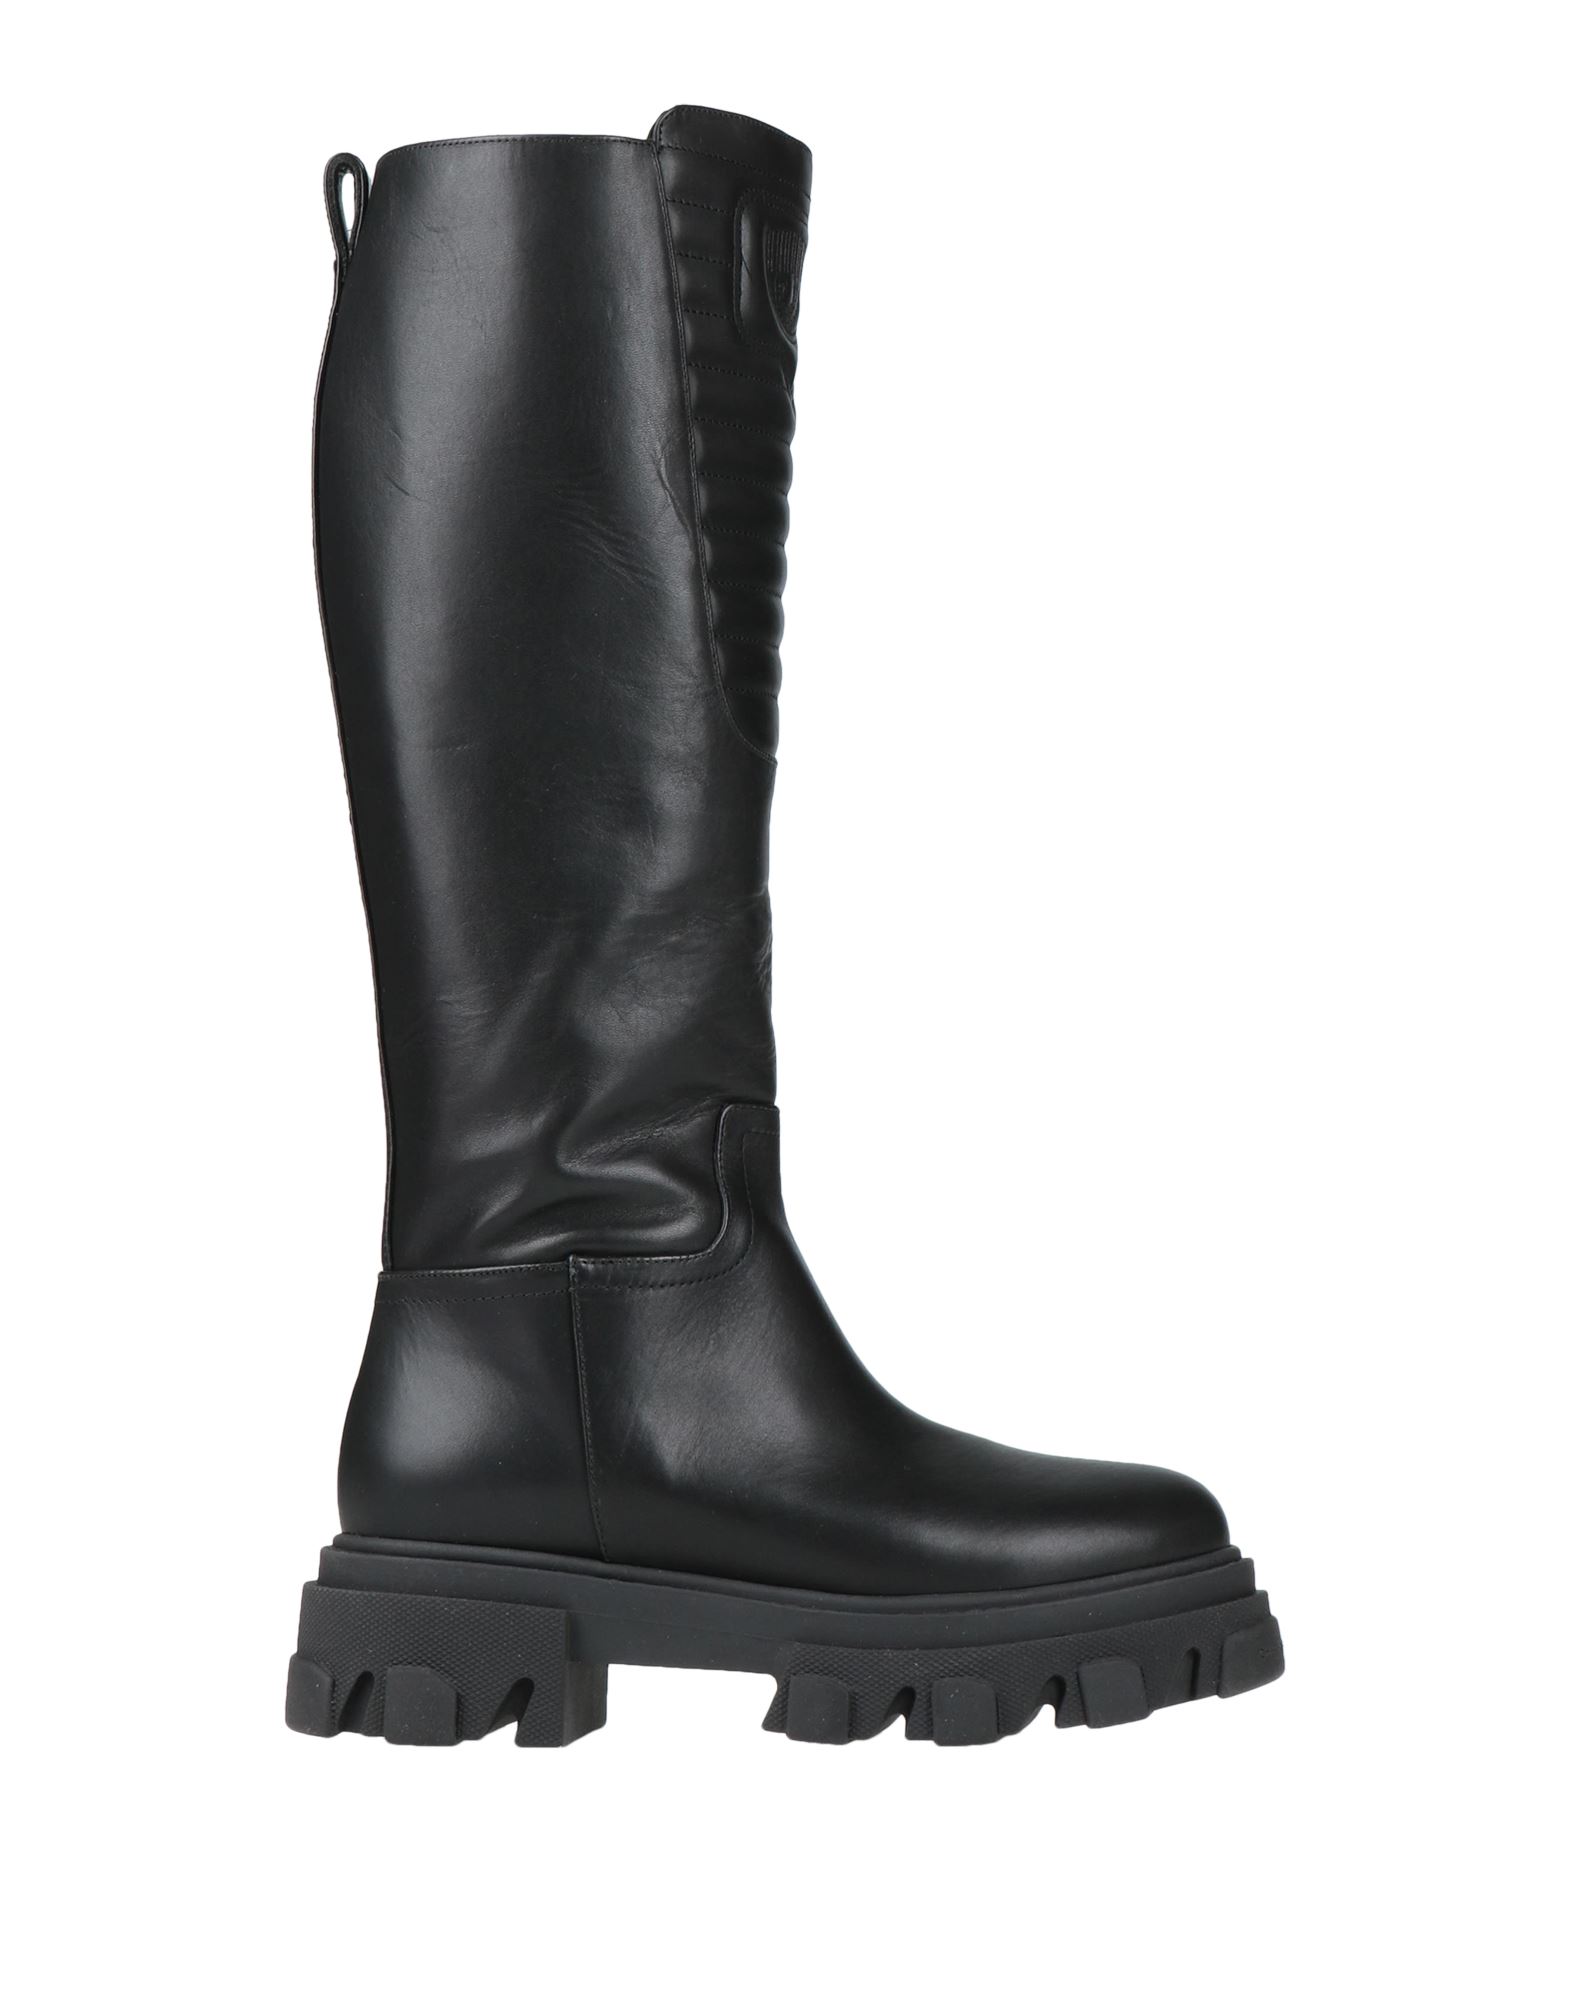 Shop Chiara Ferragni Woman Boot Black Size 5 Calfskin